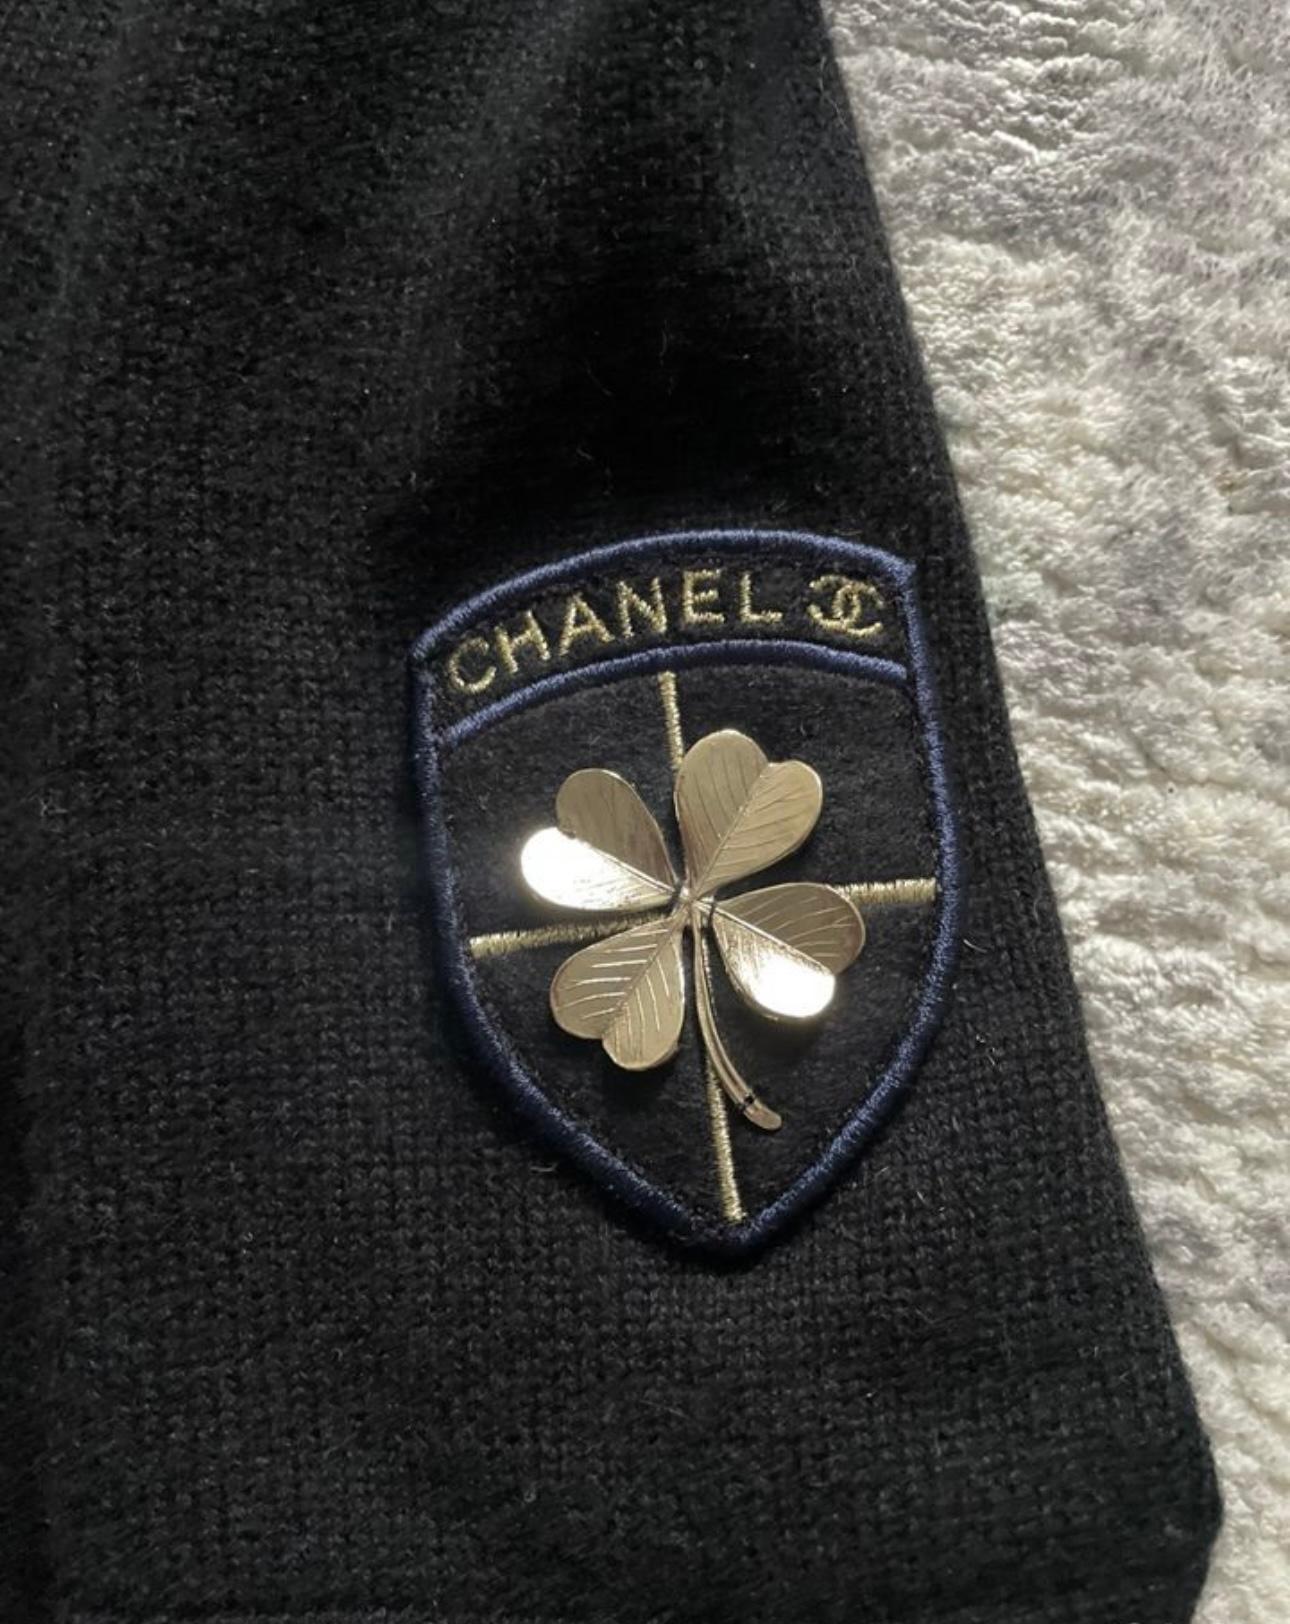 Schwarzes Kaschmirkleid von Chanel mit CC-Glücksklee-Patch.
- CC-Logo-Knöpfe an den Taschen
Größenbezeichnung 46 FR. Der Zustand ist tadellos.